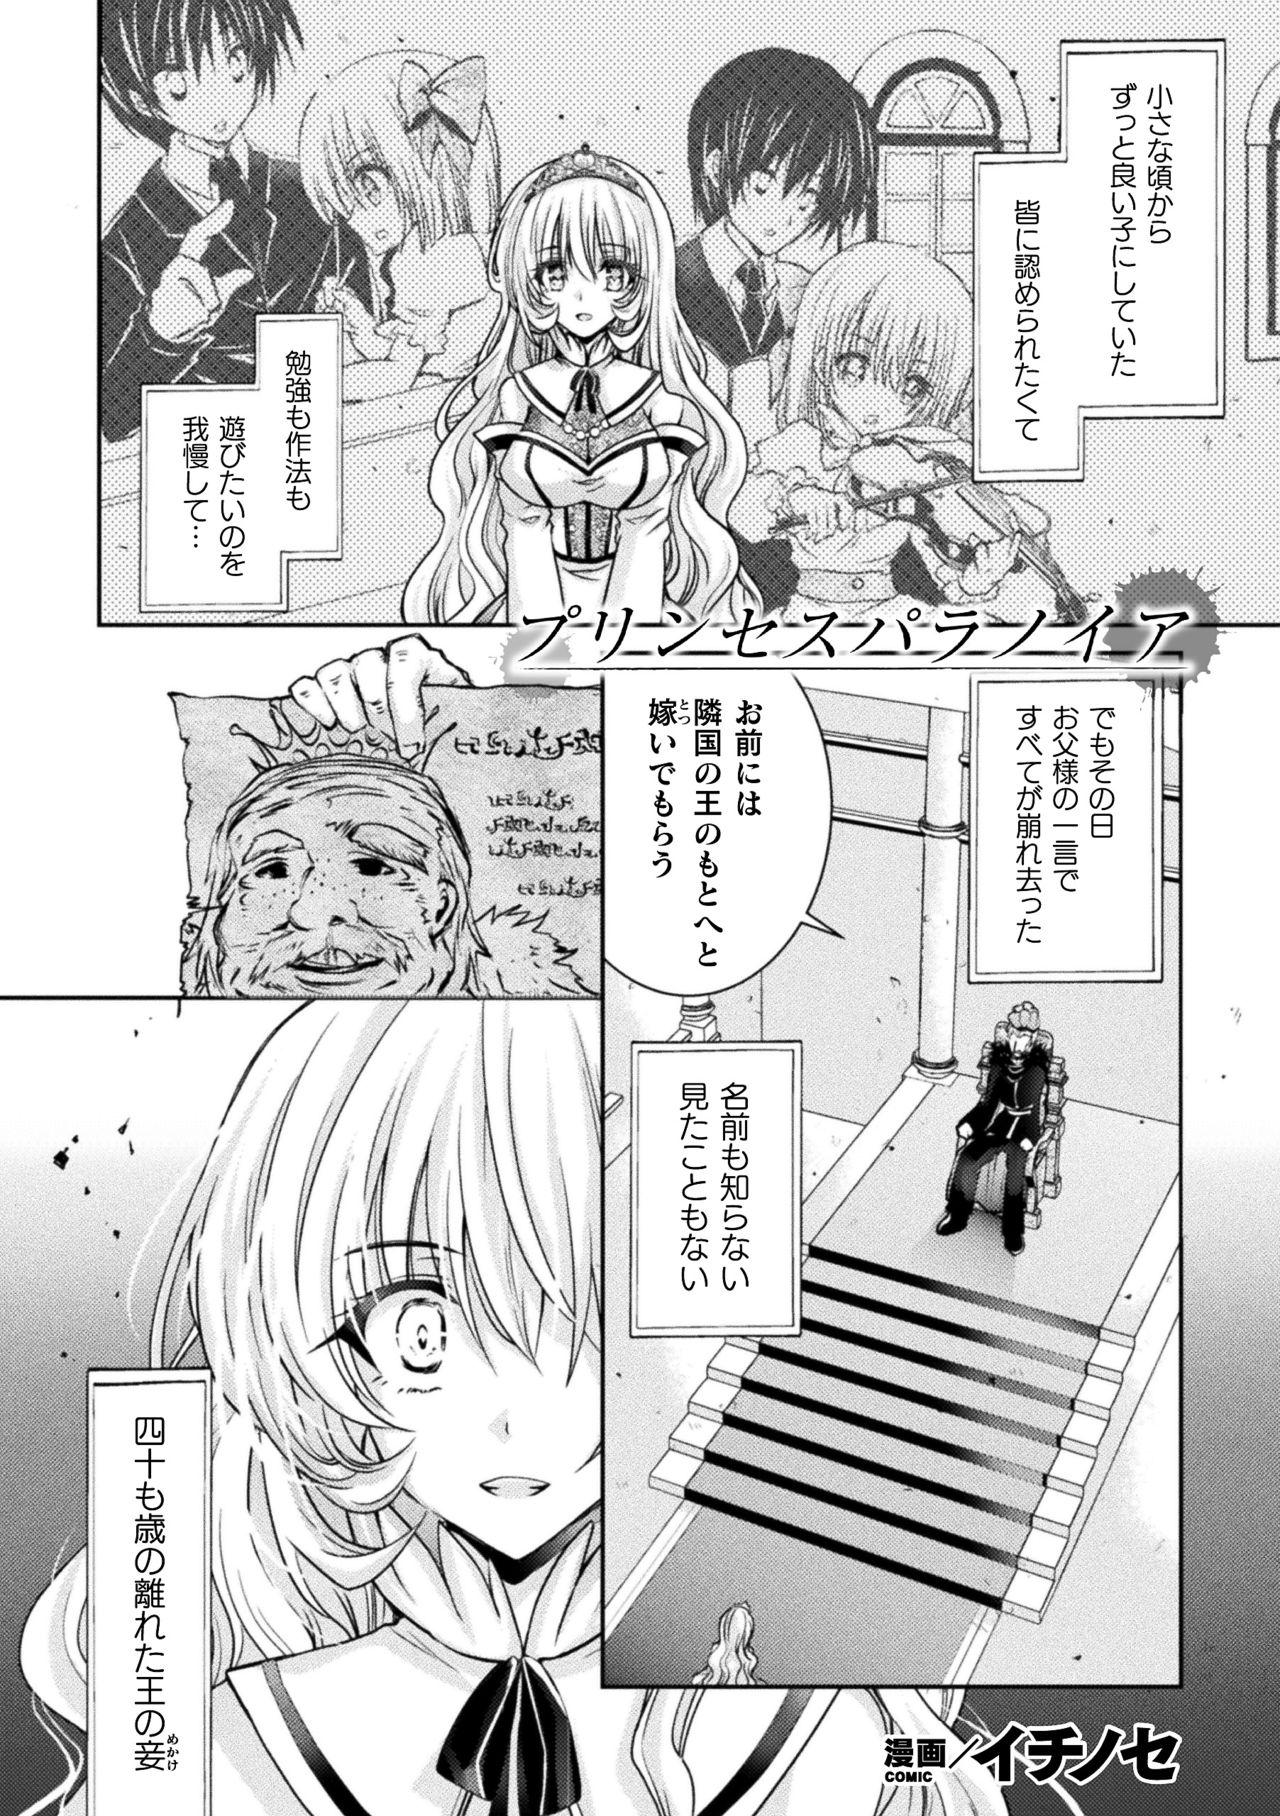 Gayemo 2D Comic Magazine Josei Joui no Gyakutane Press de Zettai Nakadashi! Vol. 2 Caught - Page 3